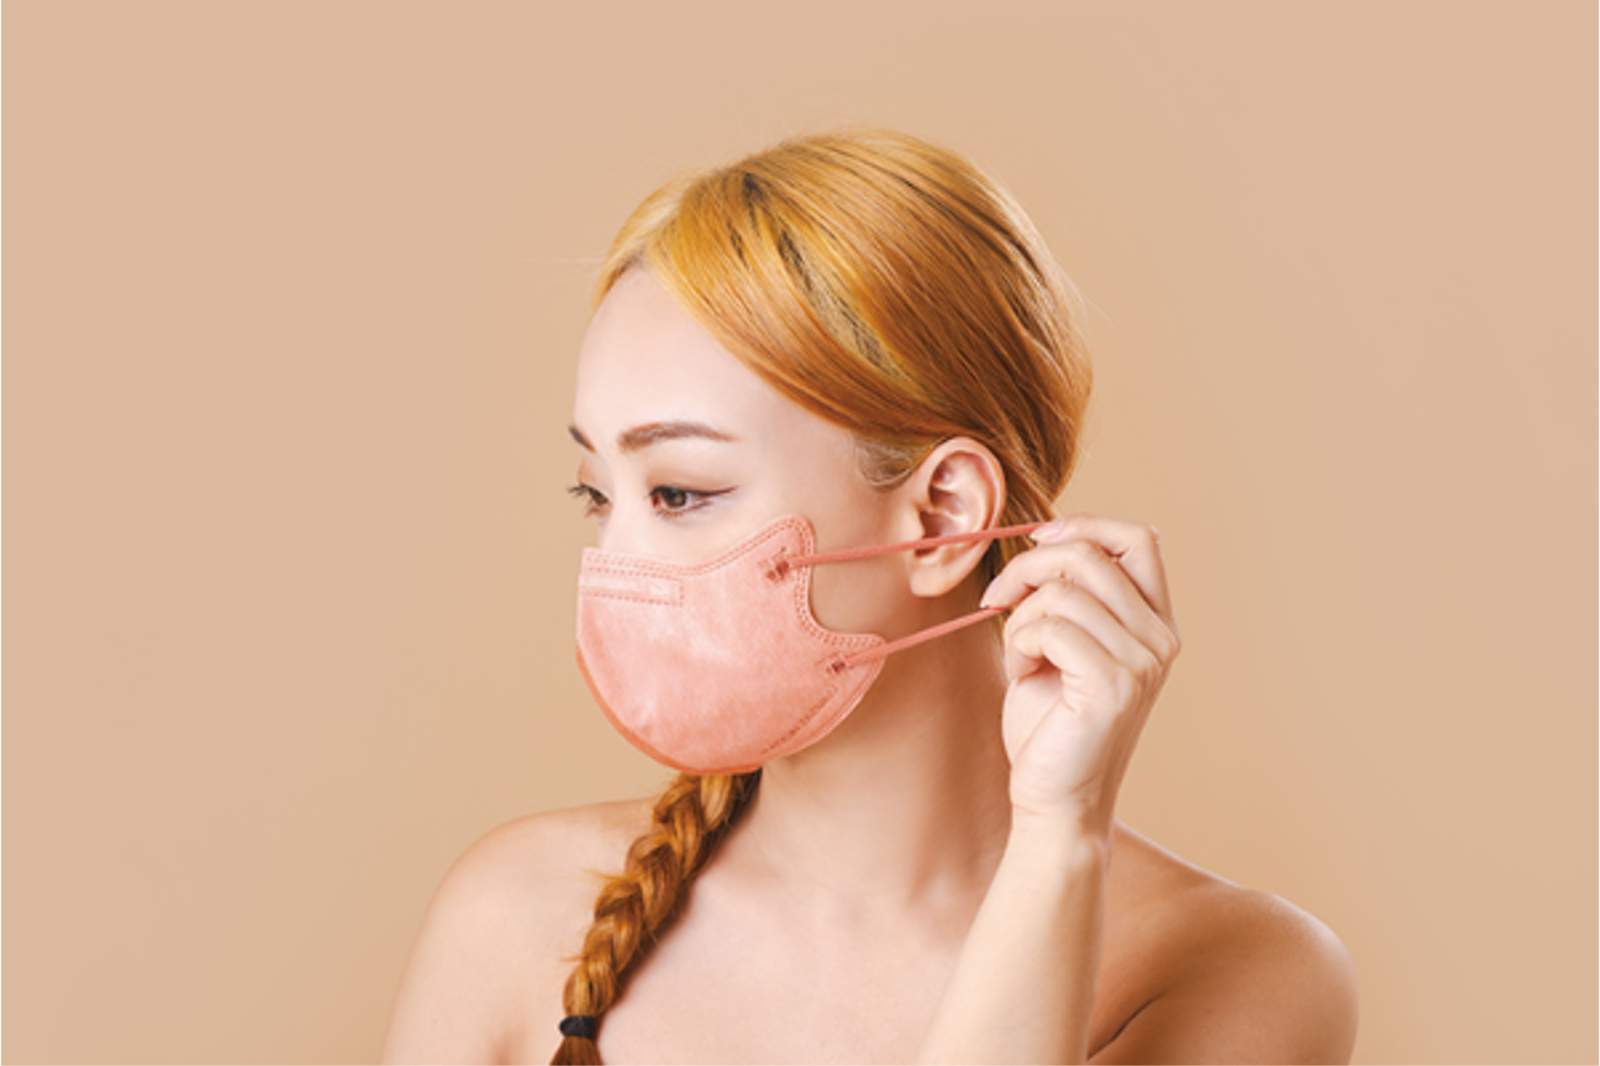 3D口罩避免戴口罩呼吸困難